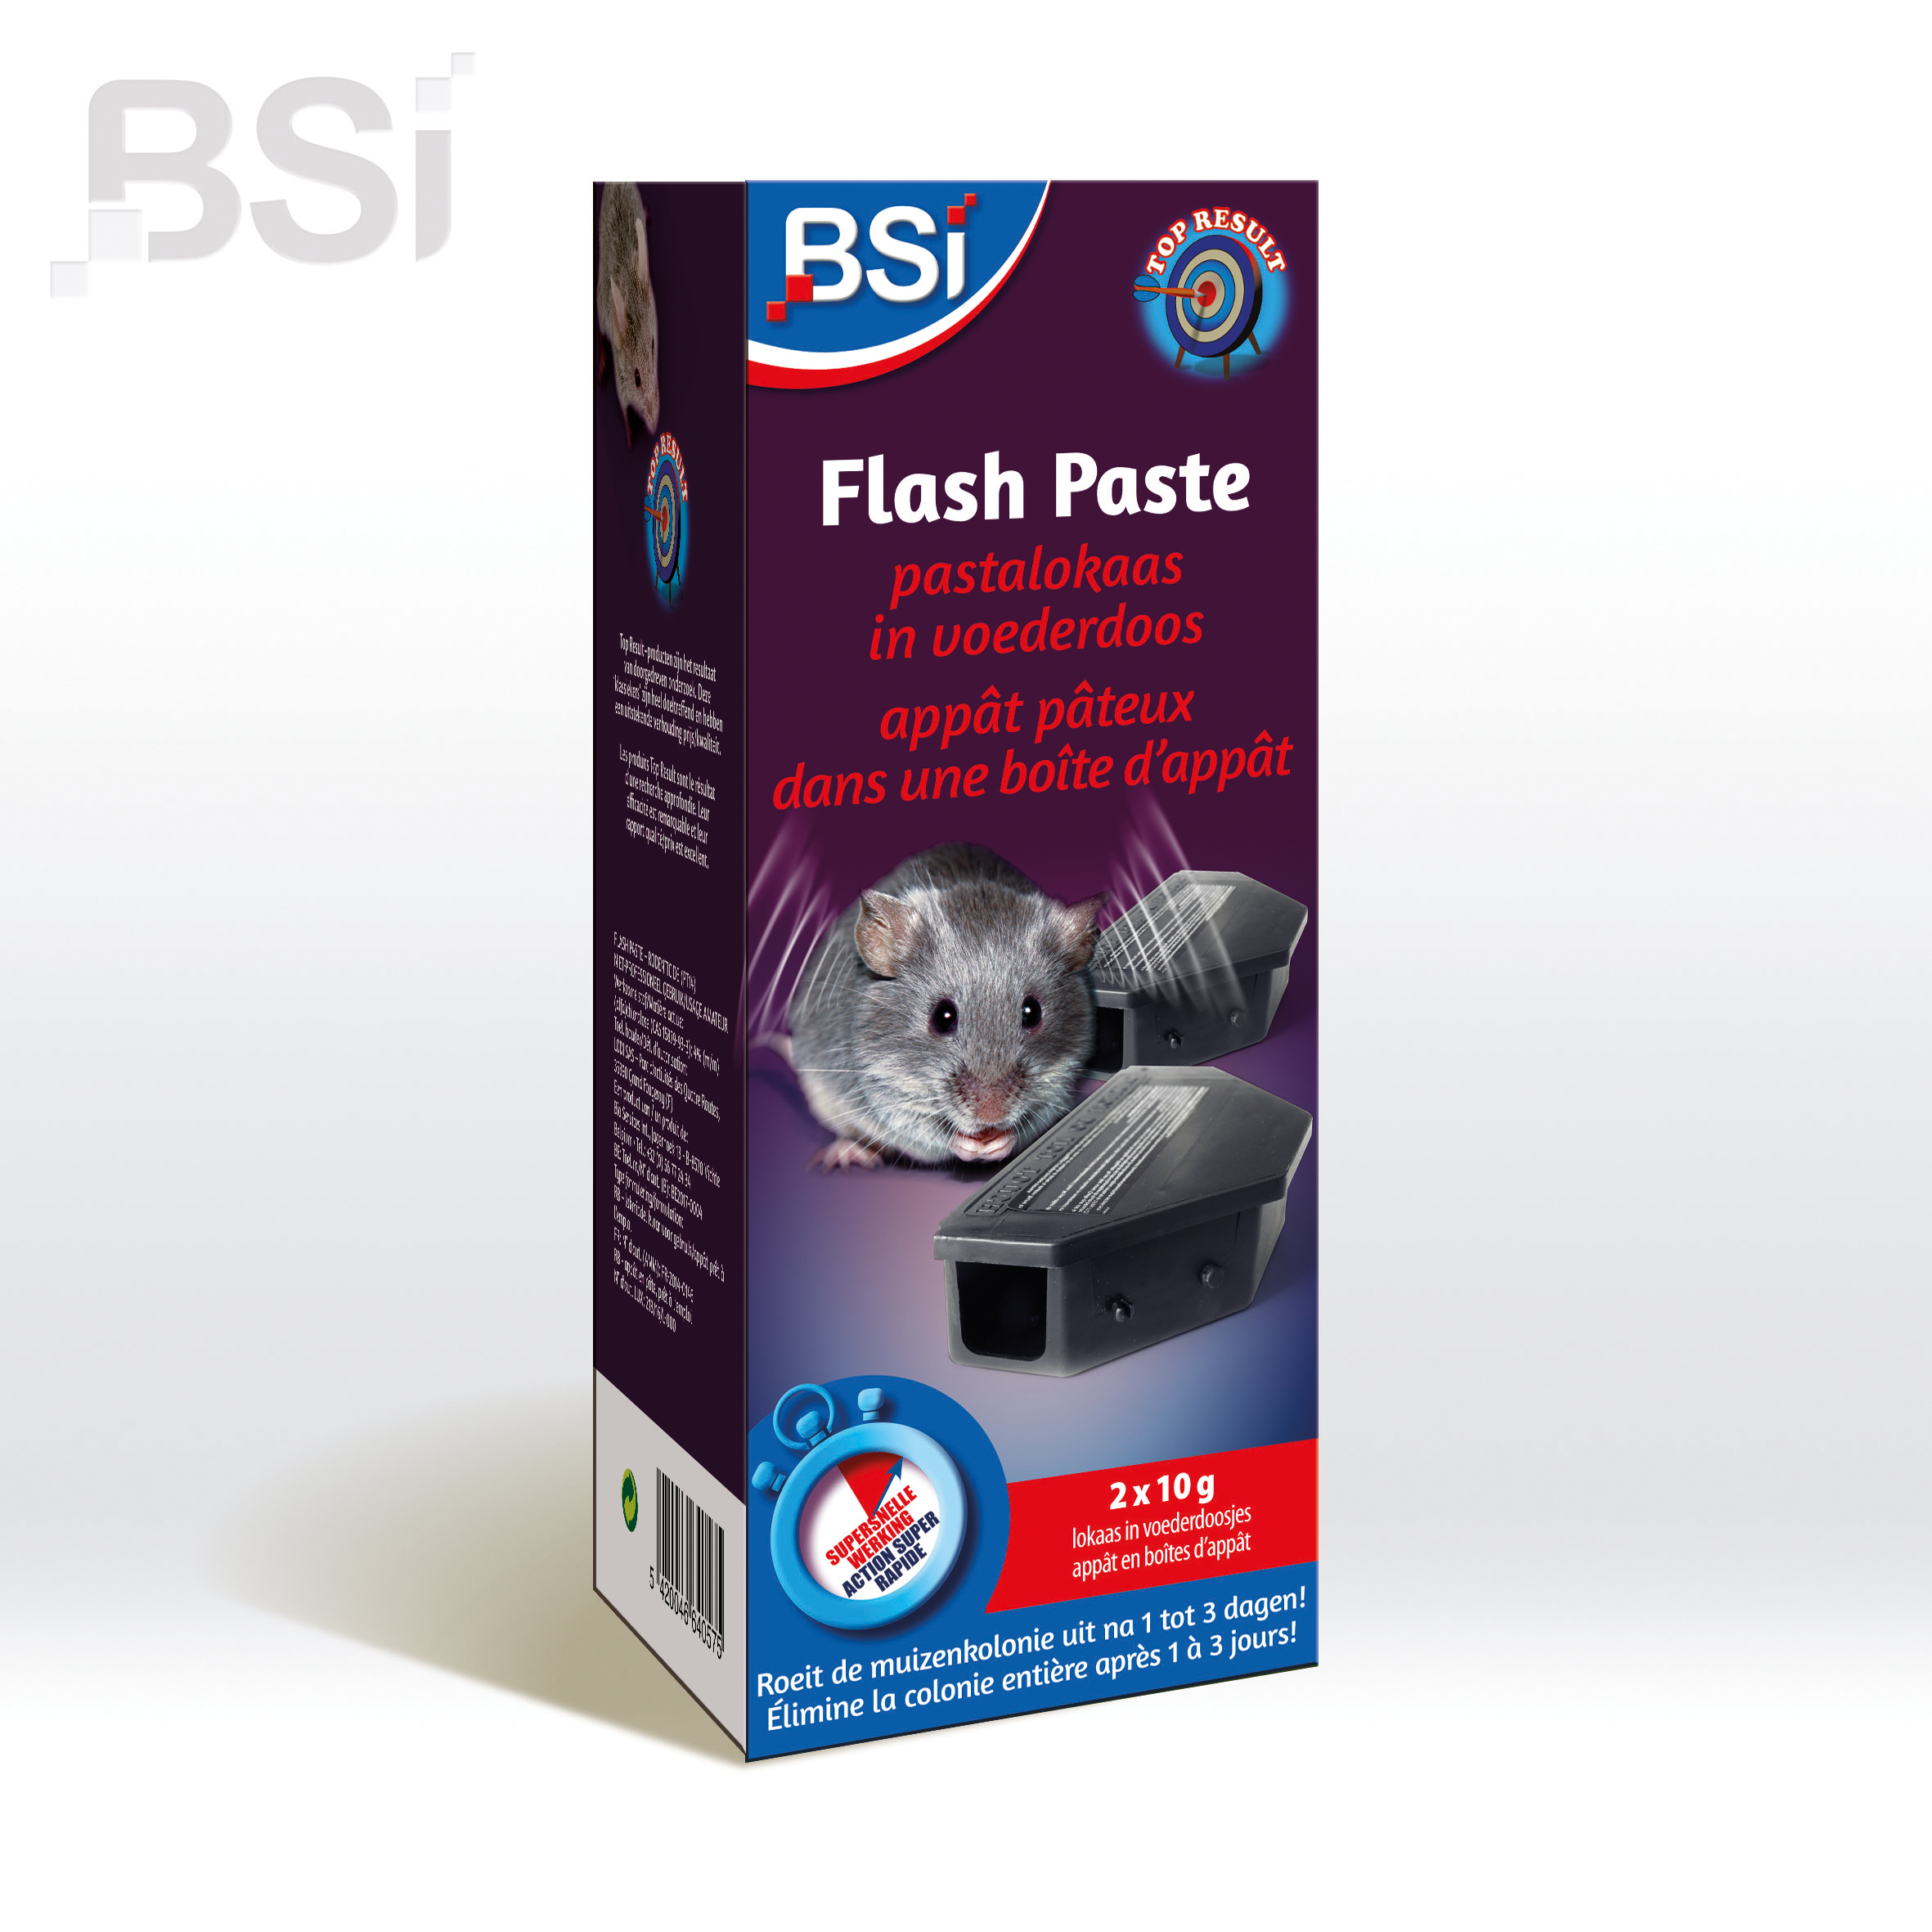 BSI Flash Paste en Boîte d'Appât 2 x 10 g image